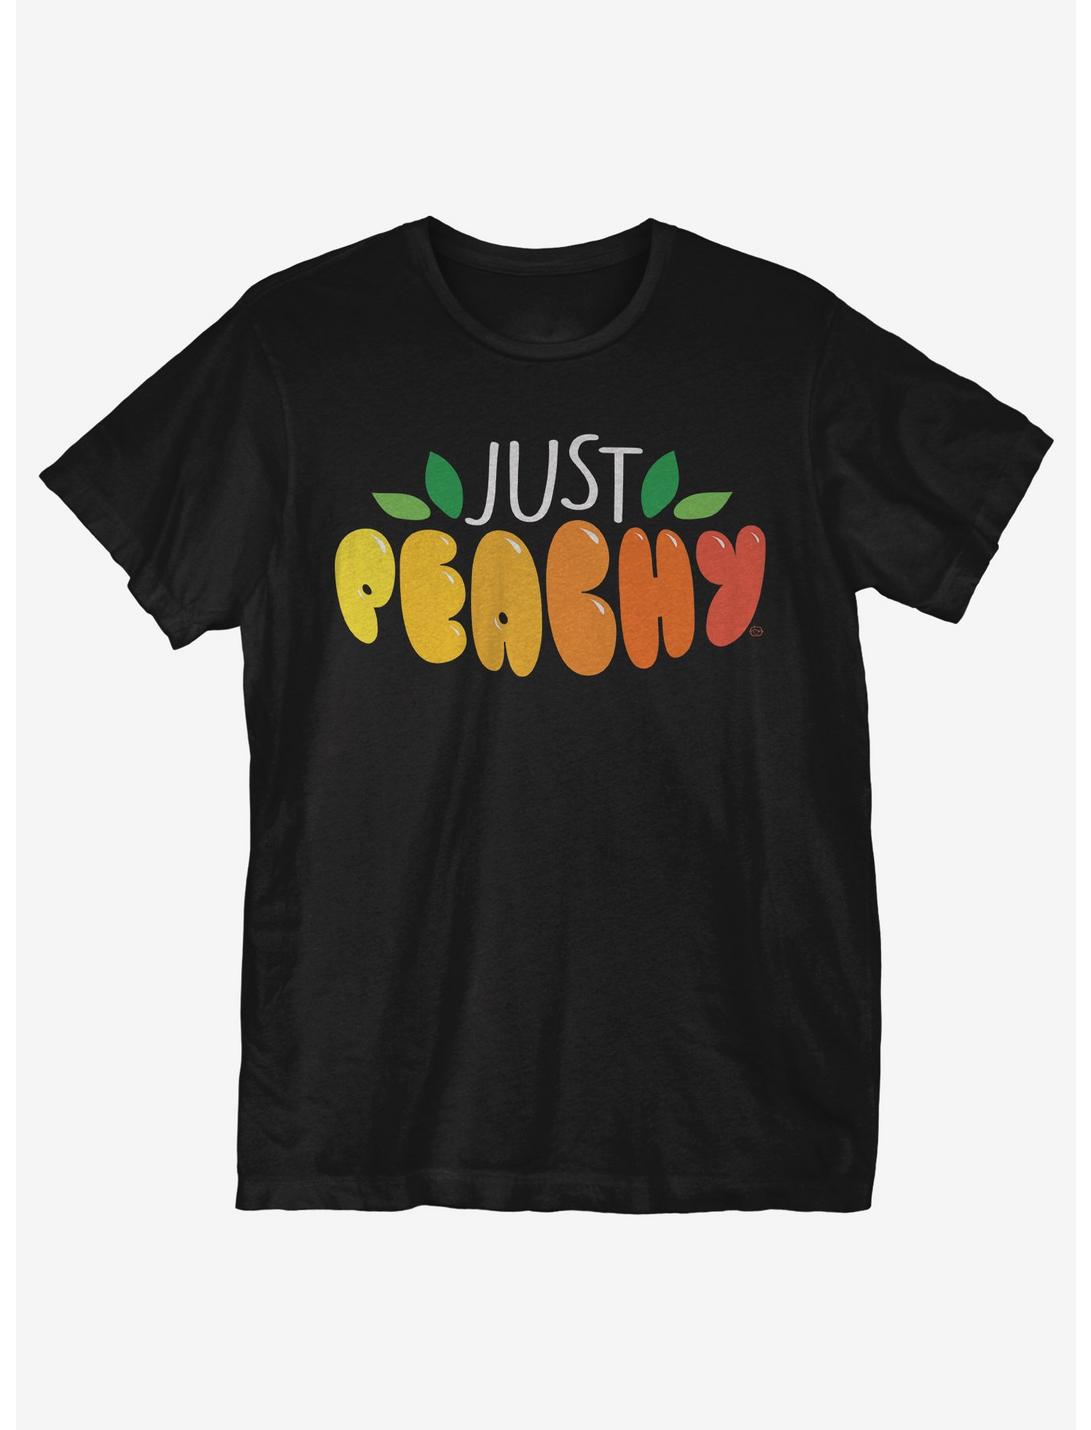 Just Peachy T-Shirt, BLACK, hi-res